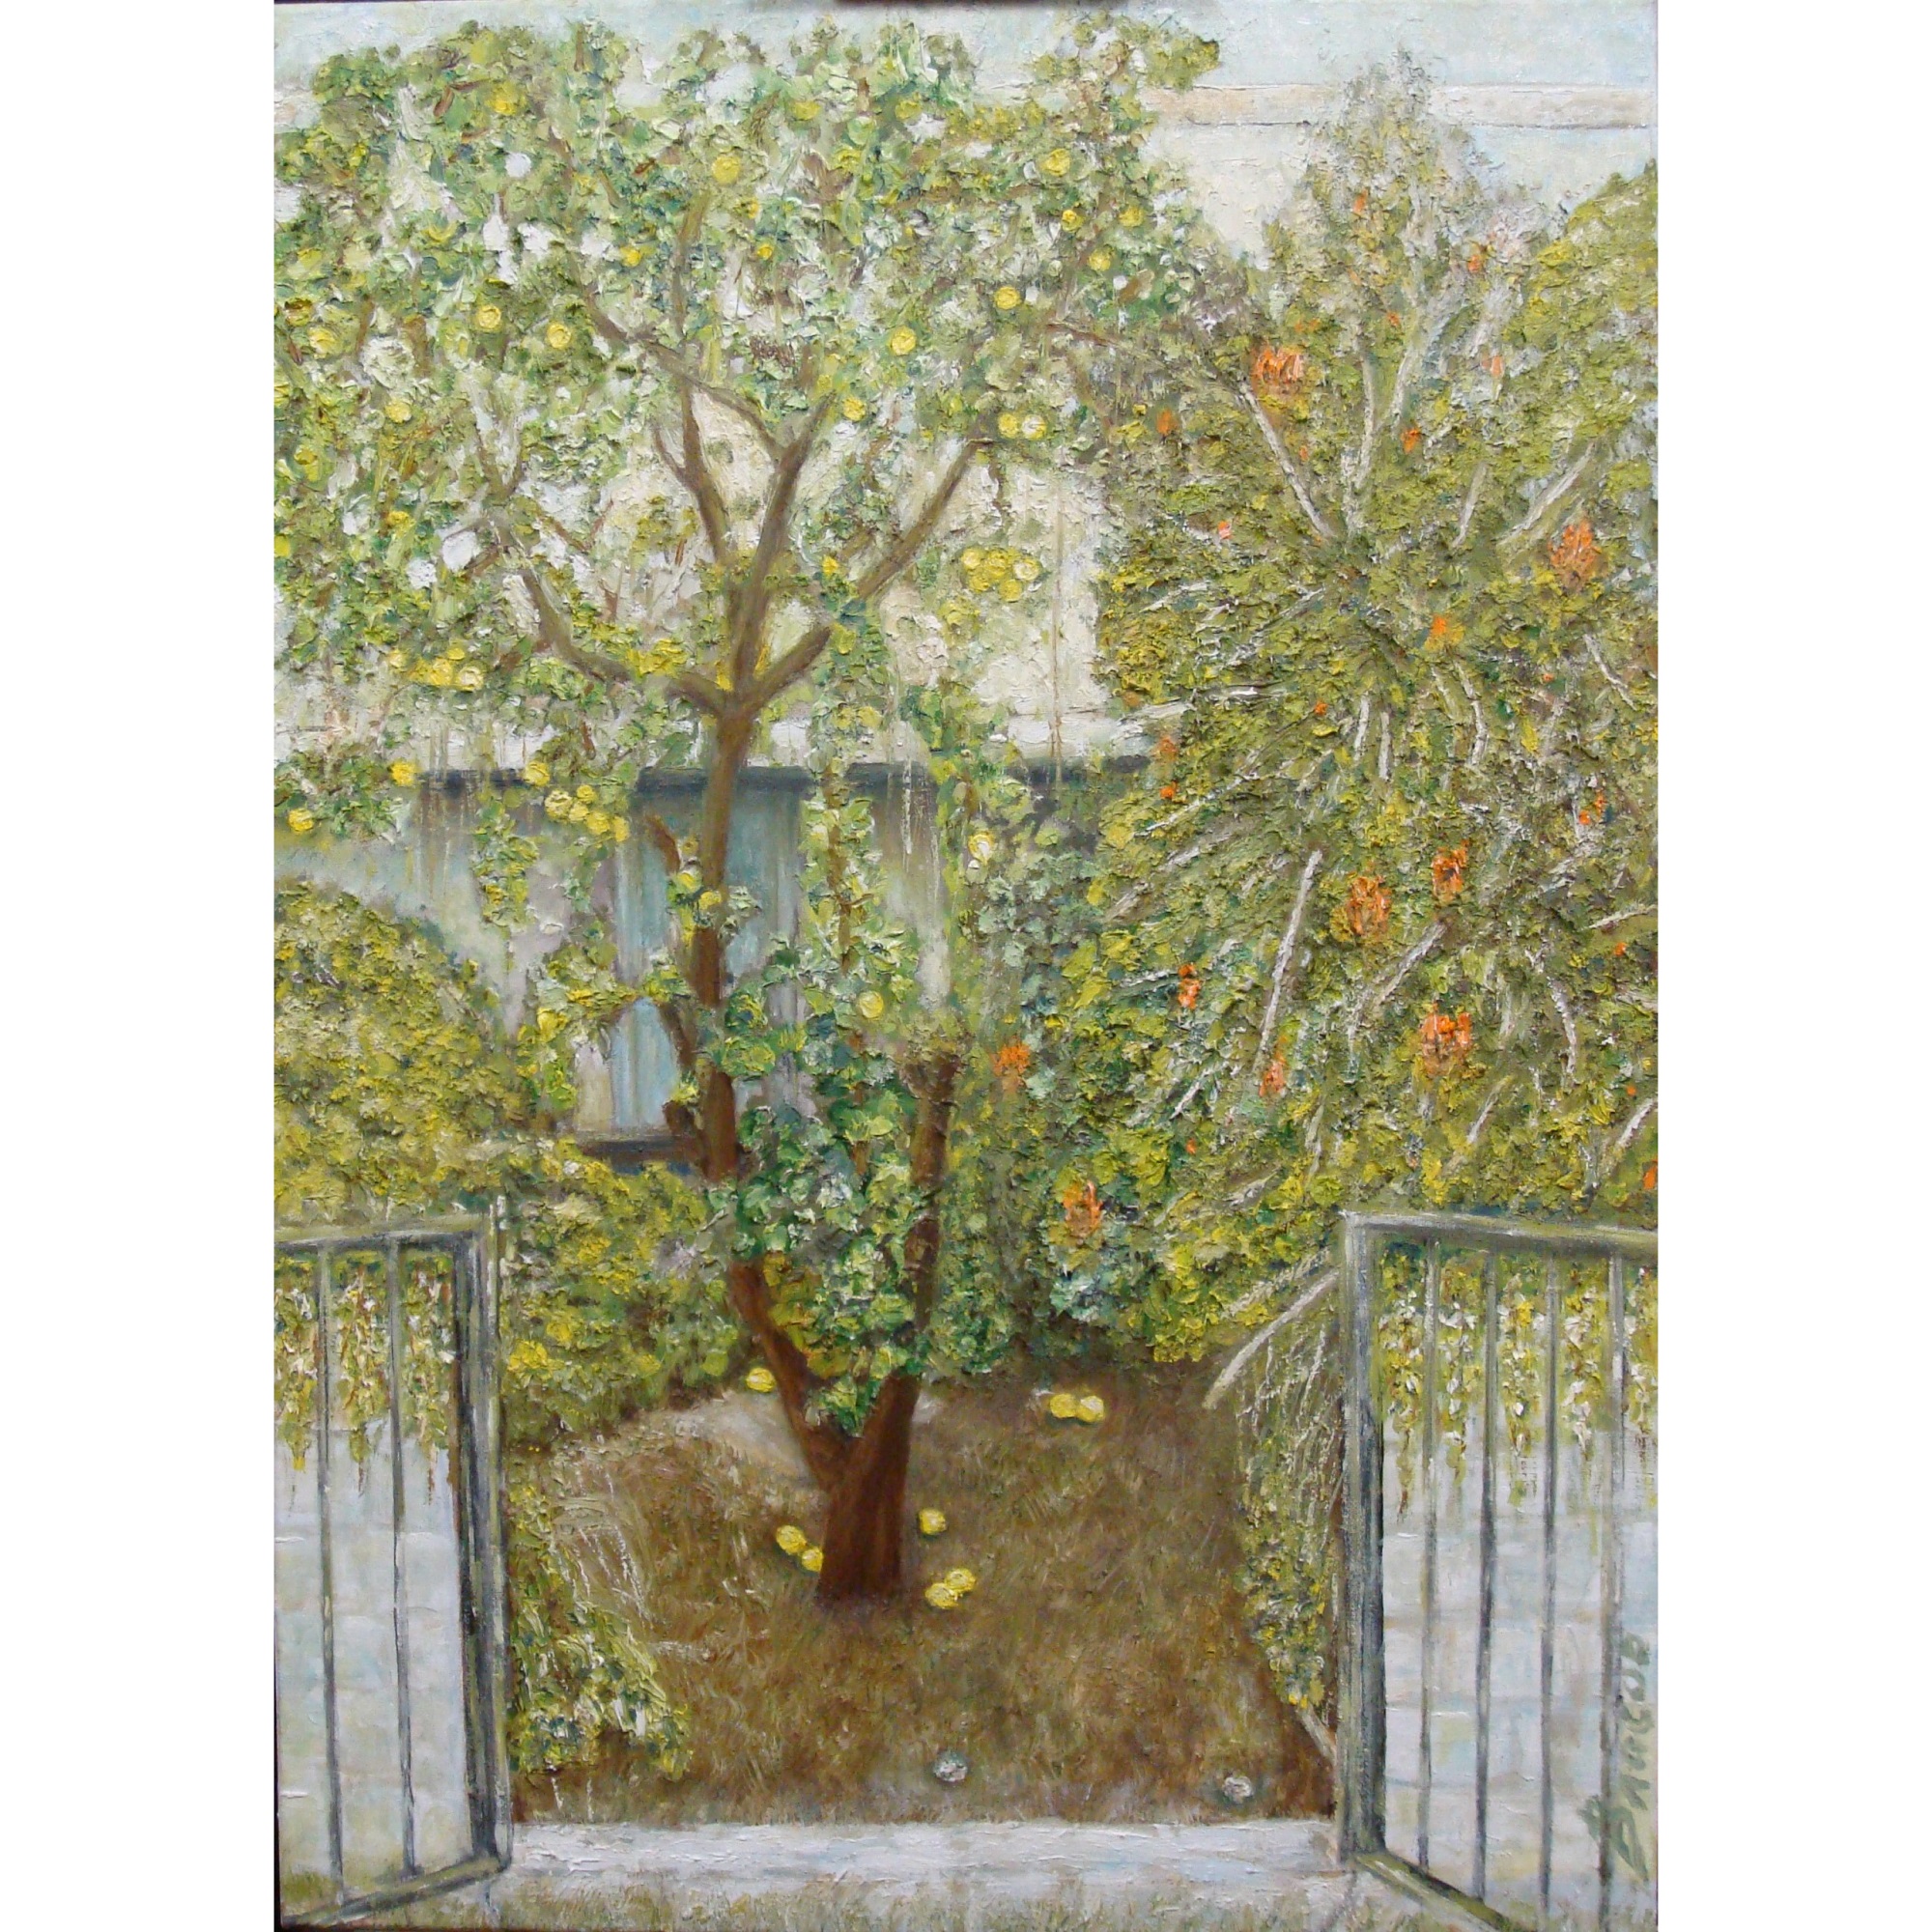 Палисадник с лимонным деревом. Иерусалим